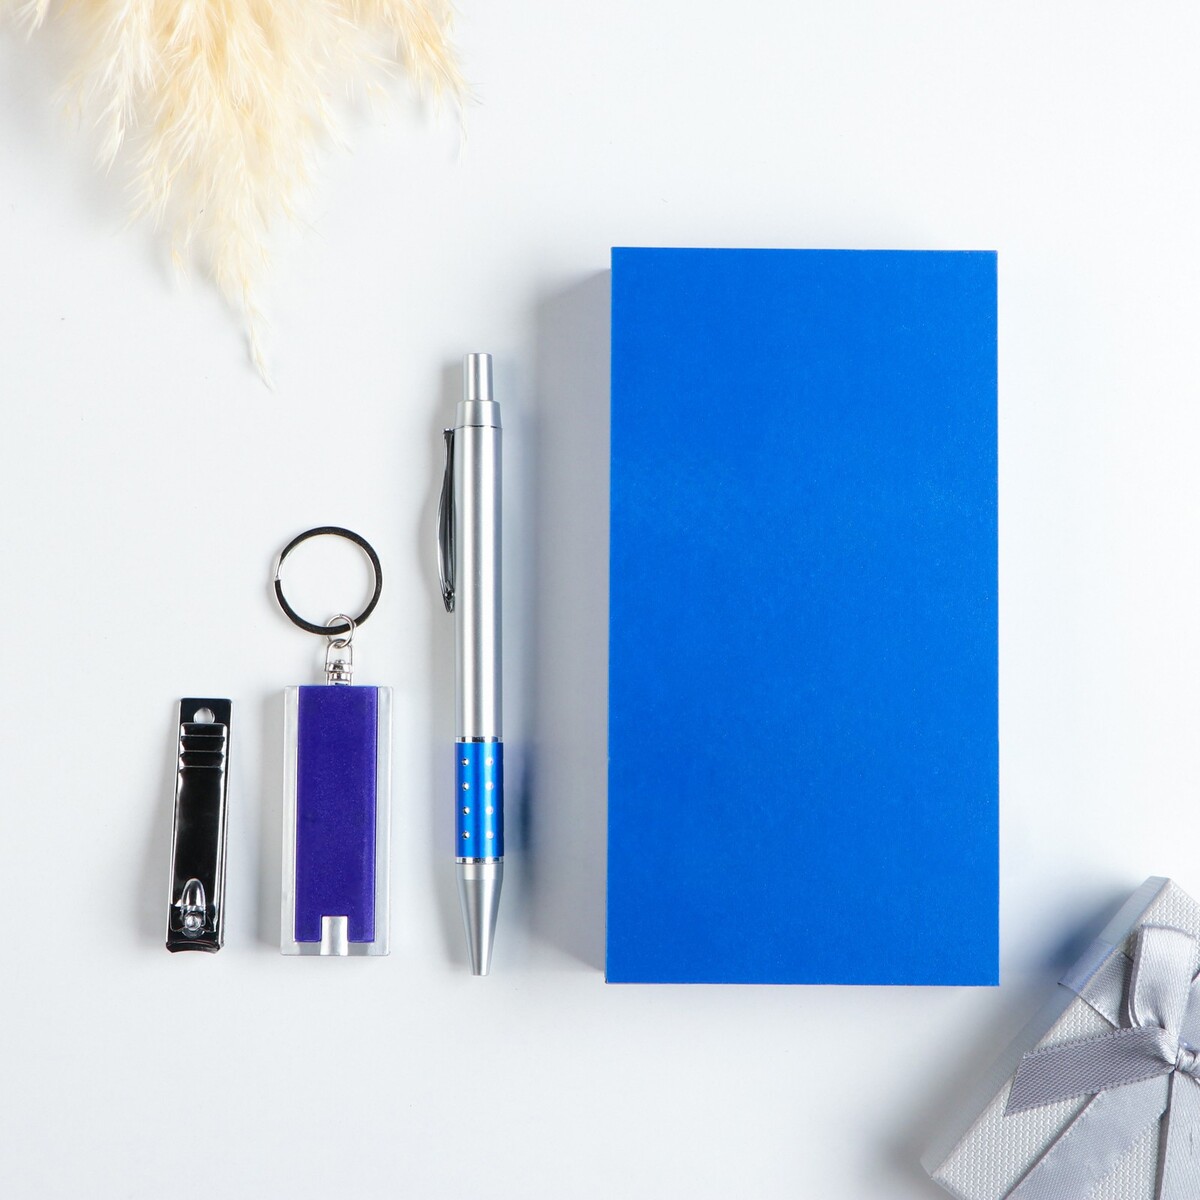 Набор подарочный 3в1 (ручка, кусачки, фонарик синий) набор подарочный 3в1 ручка зеркало кусачки